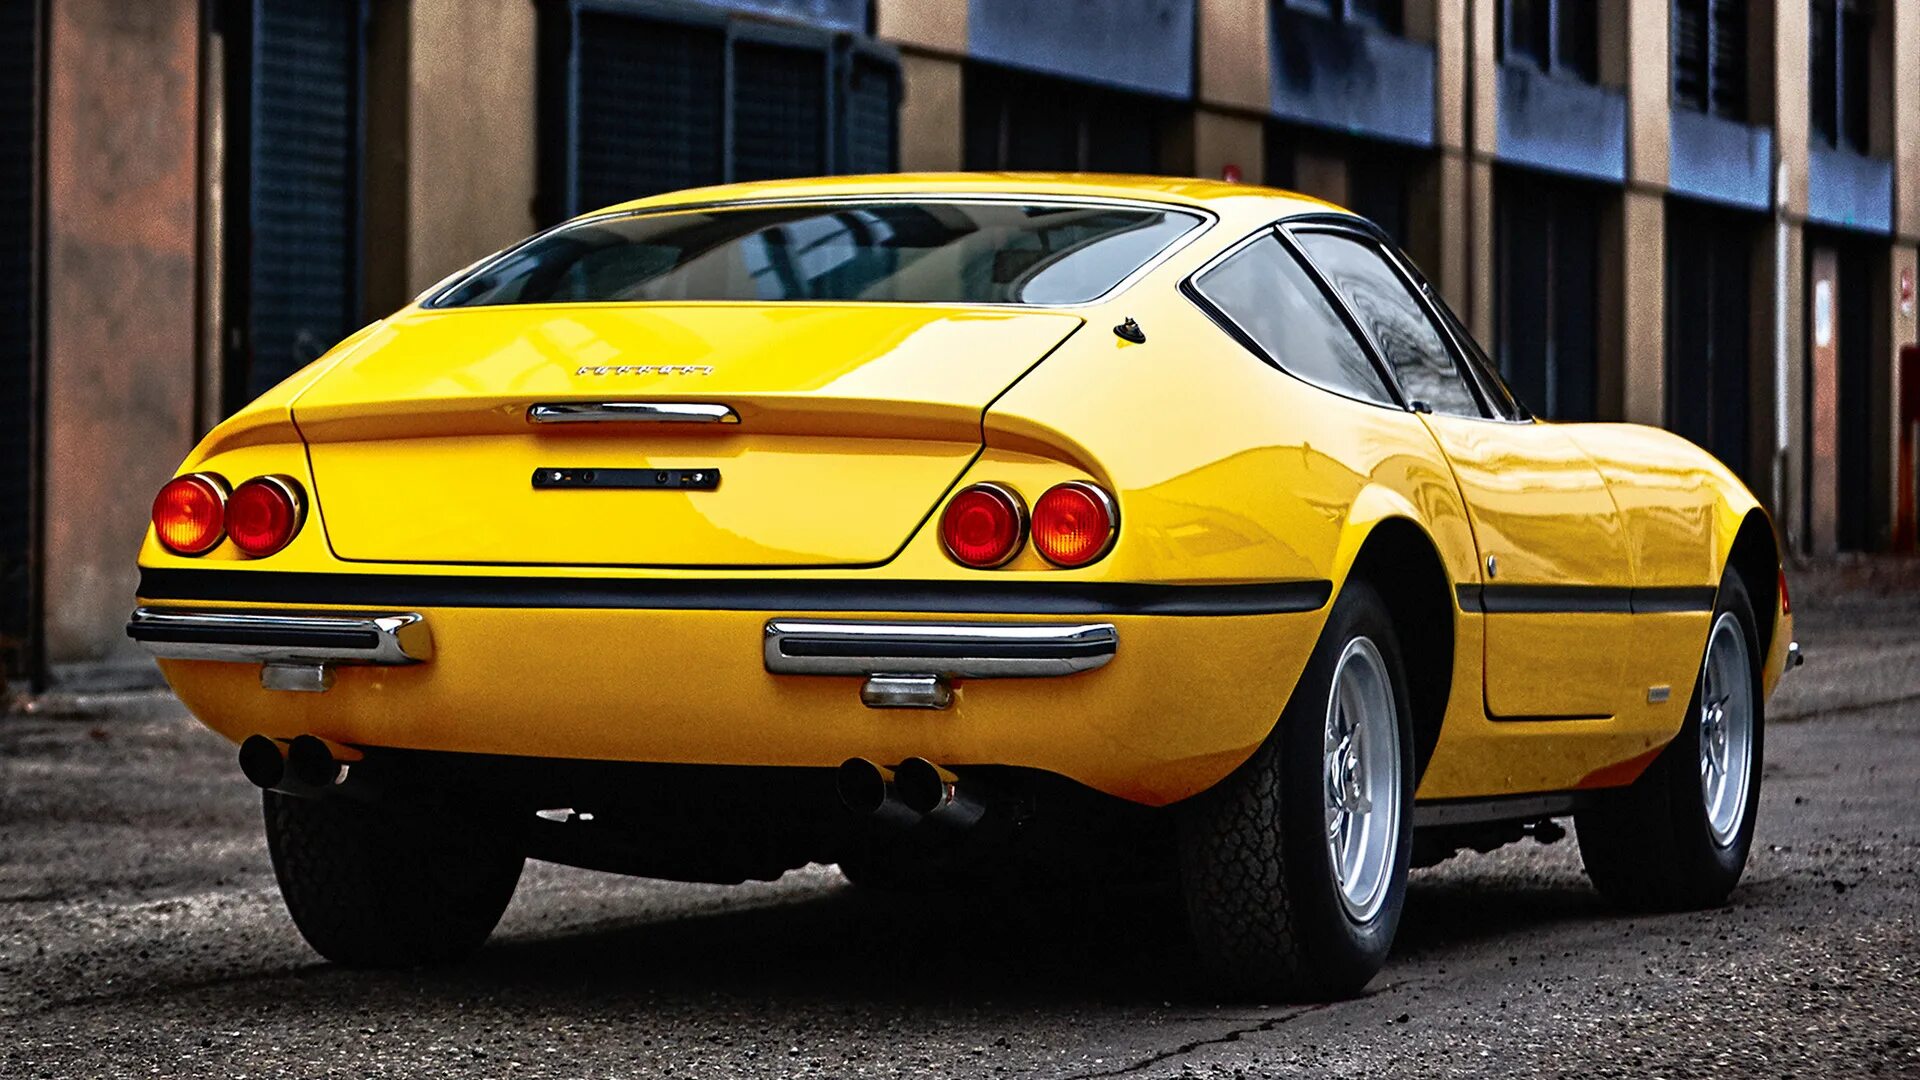 Ferrari 365. Ferrari 365 GTB Daytona. Ferrari 365 GTB/4. Феррари 365 GTB/4 Daytona. 1968 Ferrari 365 GTB/4 Daytona.